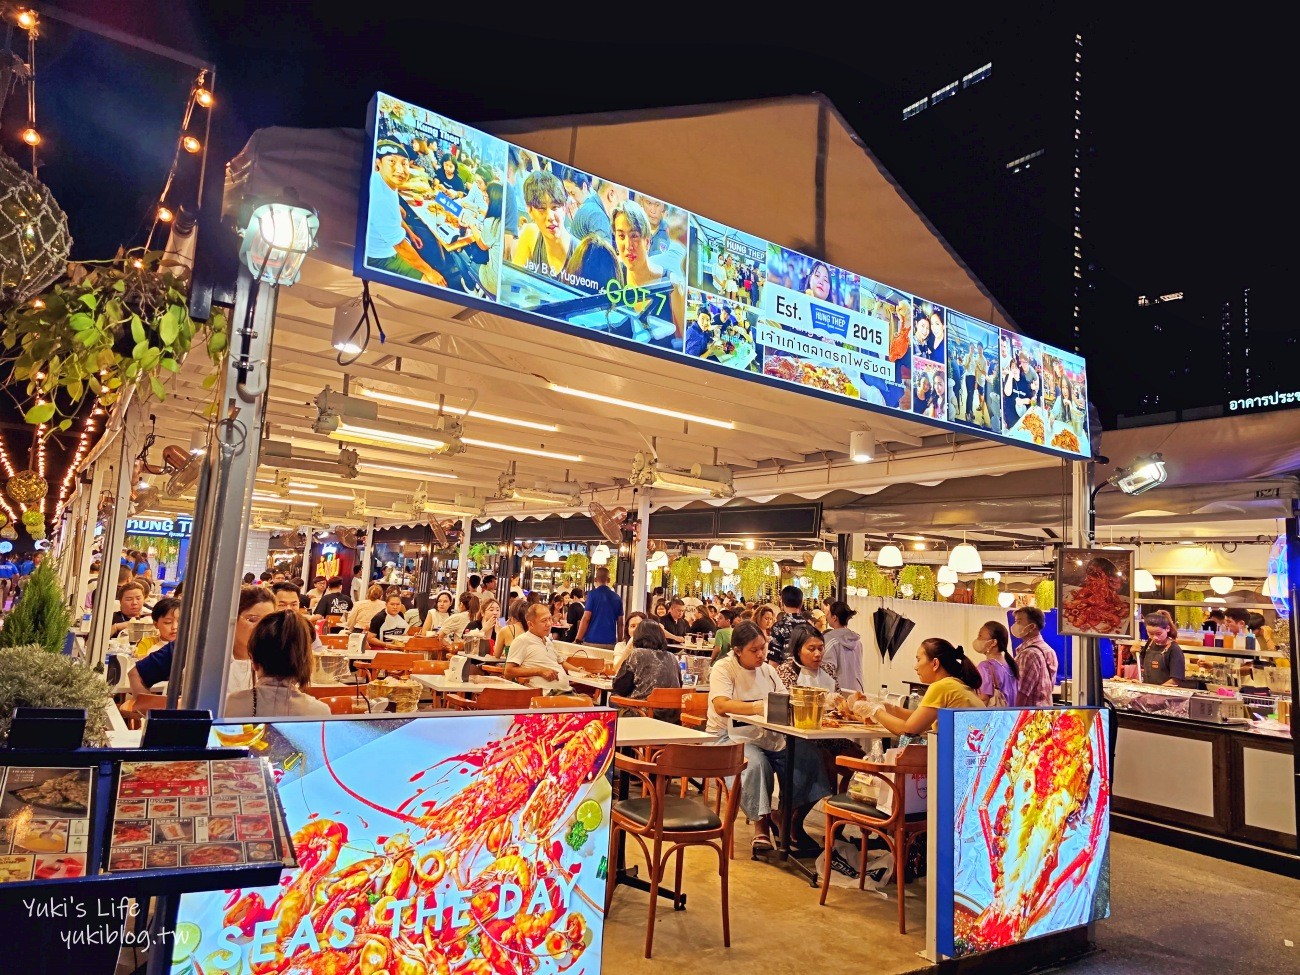 曼谷捷運地鐵景點攻略│曼谷MRT/BTS沿線必玩必吃景點,咖啡廳,美食,飯店住宿 - yukiblog.tw